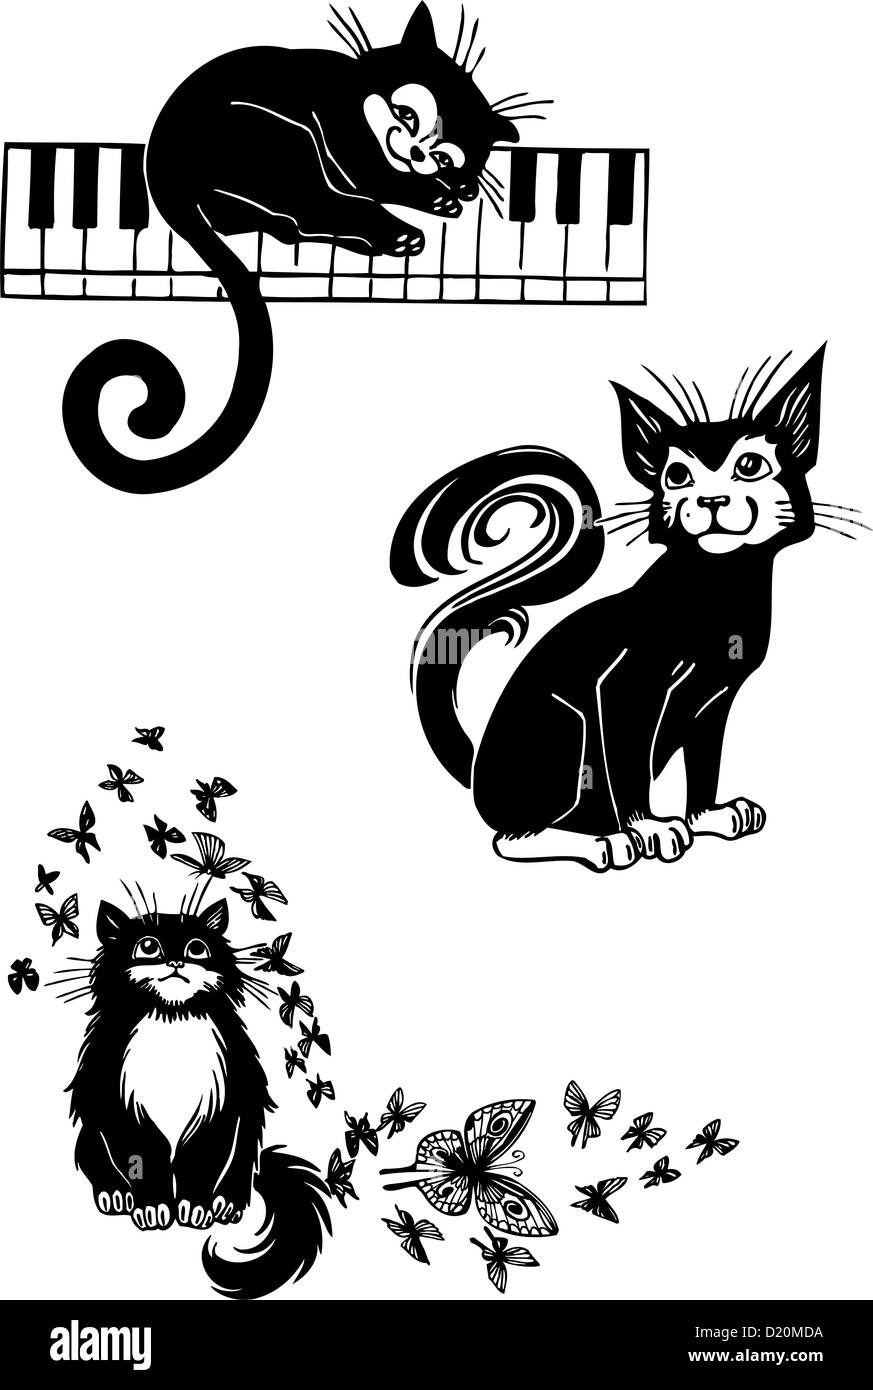 Gatos - estilizada elegancia y graciosos gatos. Foto de stock